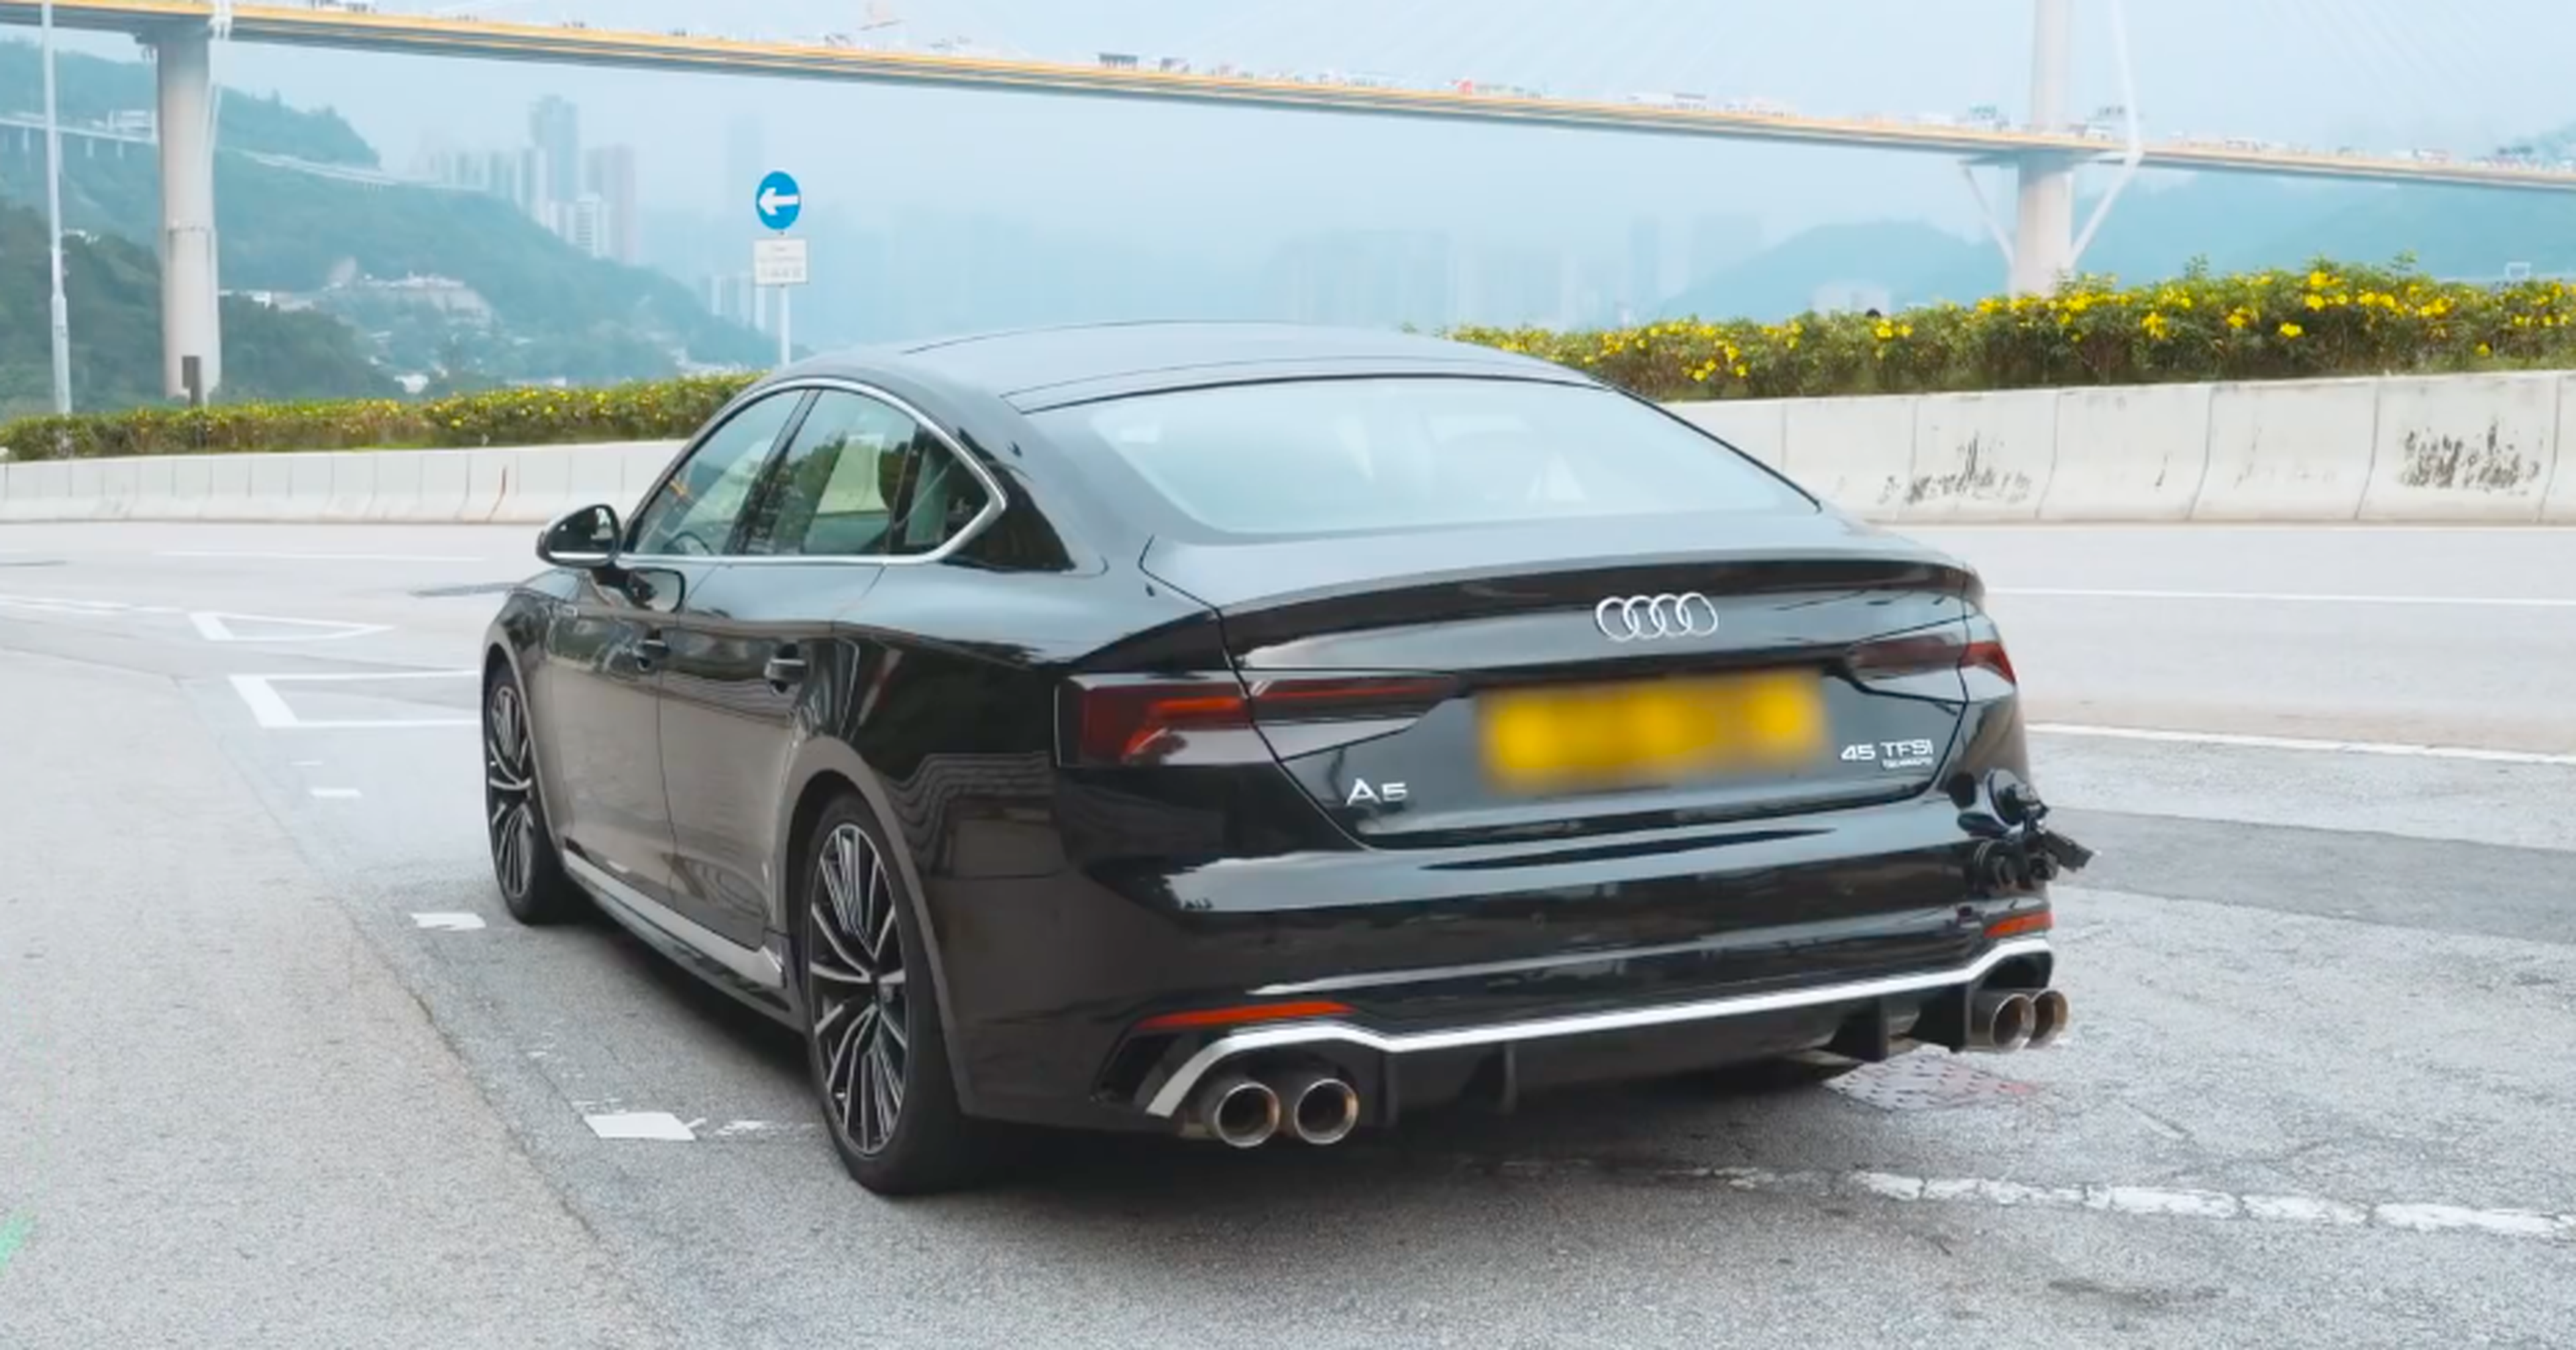 VÍDEO: Vas a flipar con esta preparación del Audi A5 con escapes Armytrix